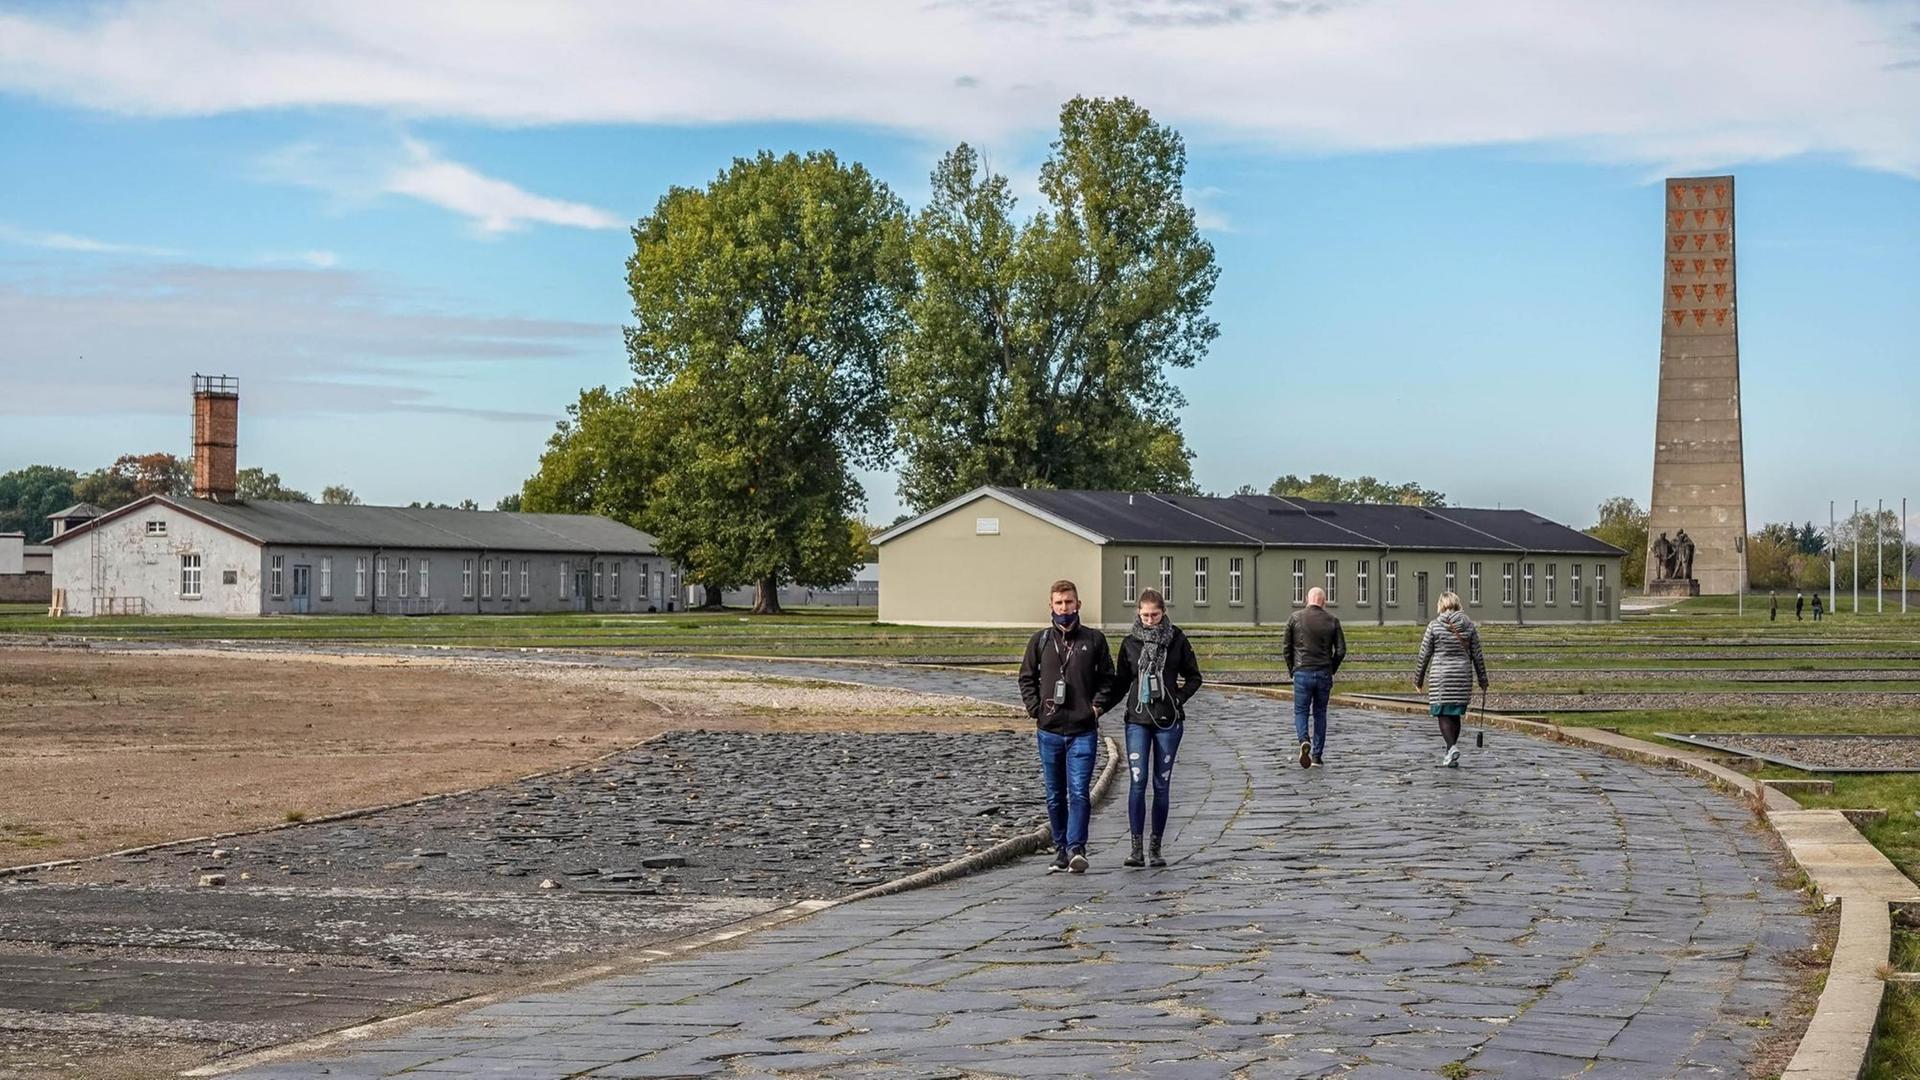 Der Appellplatz mit Obelisk aus der DDR-Zeit im Hintergrund in der KZ-Gedenkstätte Sachsenhausen